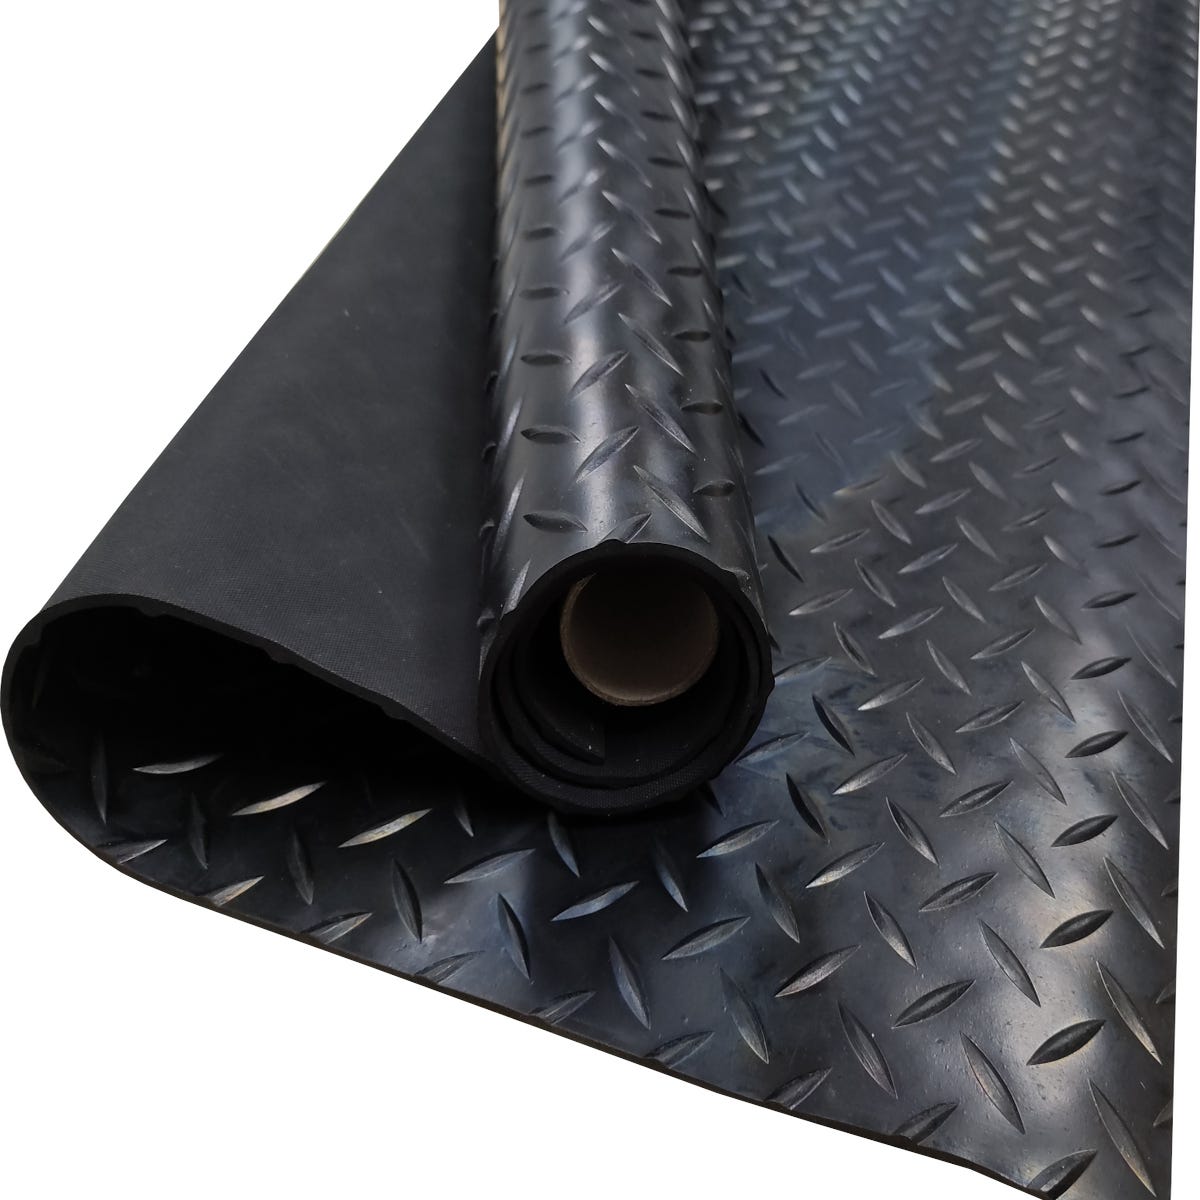 Revestimiento de Caucho Antideslizante Suelo Goma PVC (Gris-140 x 150 cm)